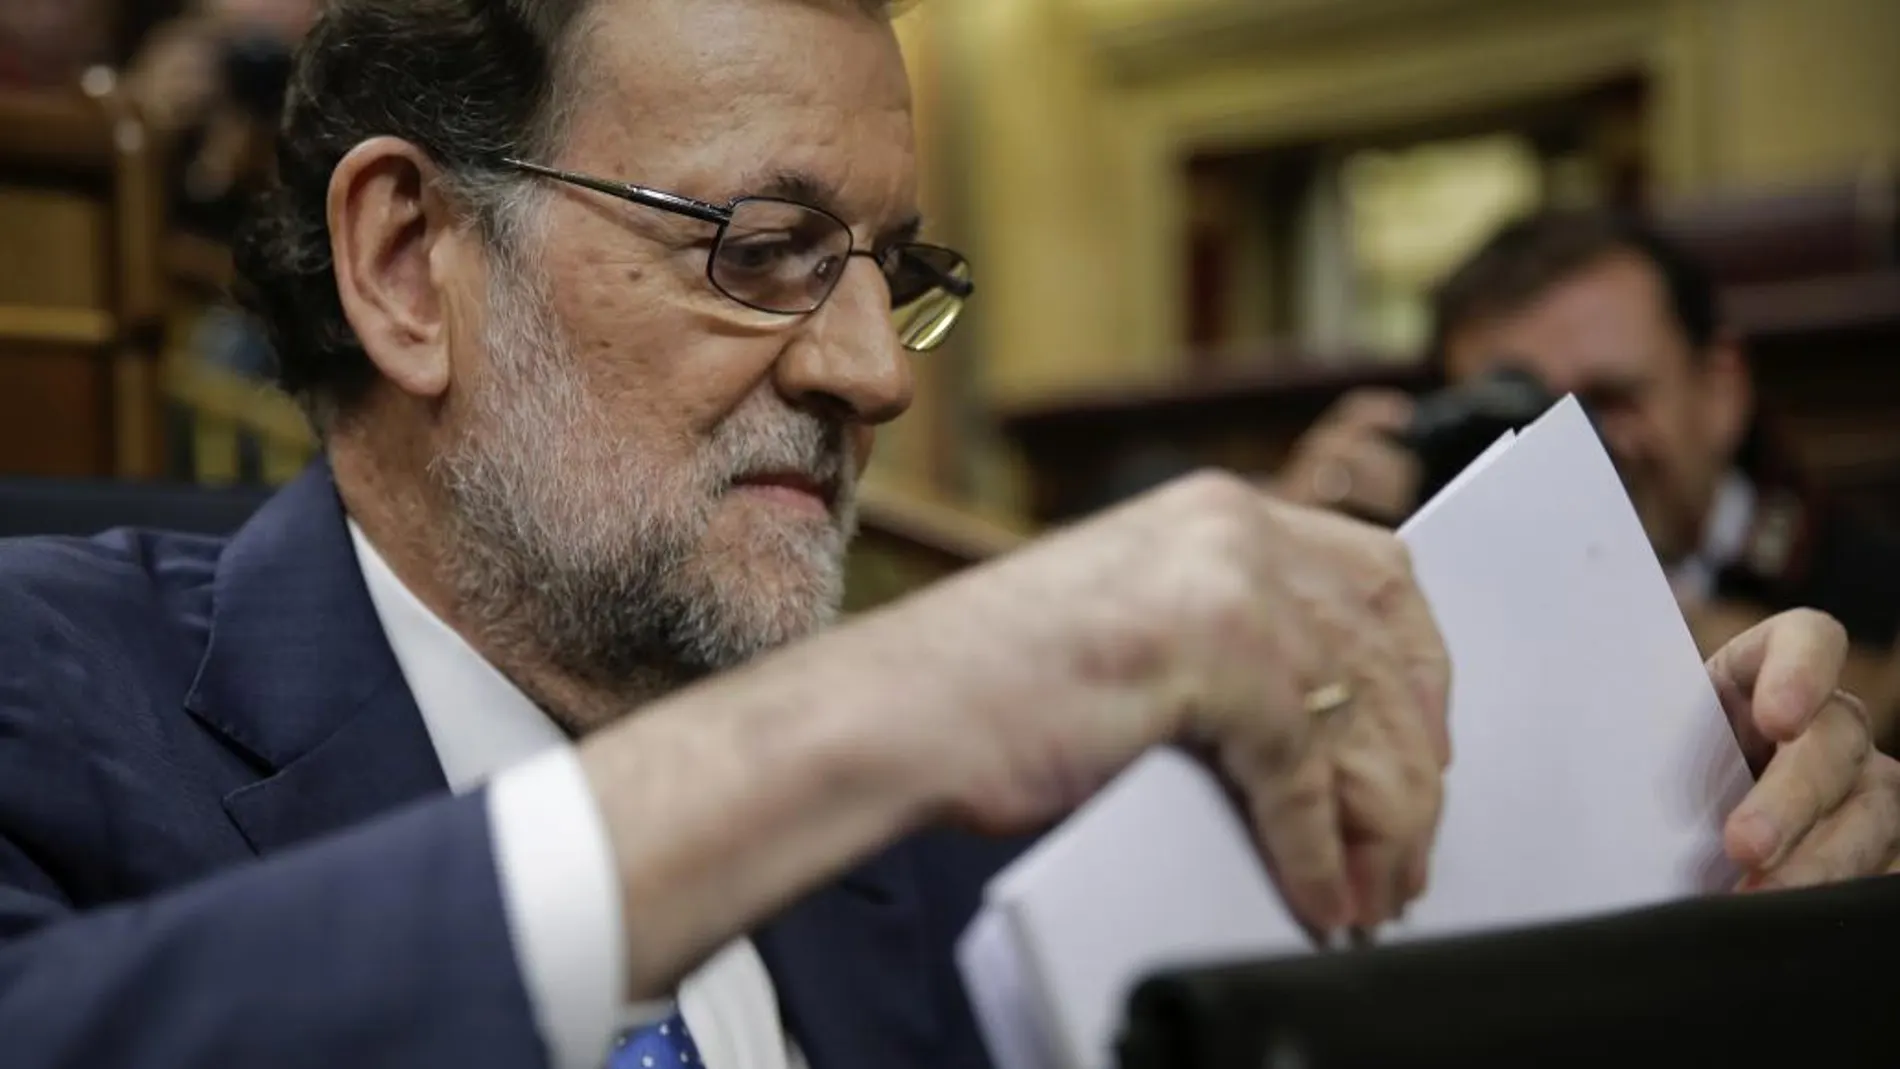 Mariano Rajoy, se prepara para intervenir momentos antes de su discurso de investidura esta tarde en el Congreso de los Diputados.